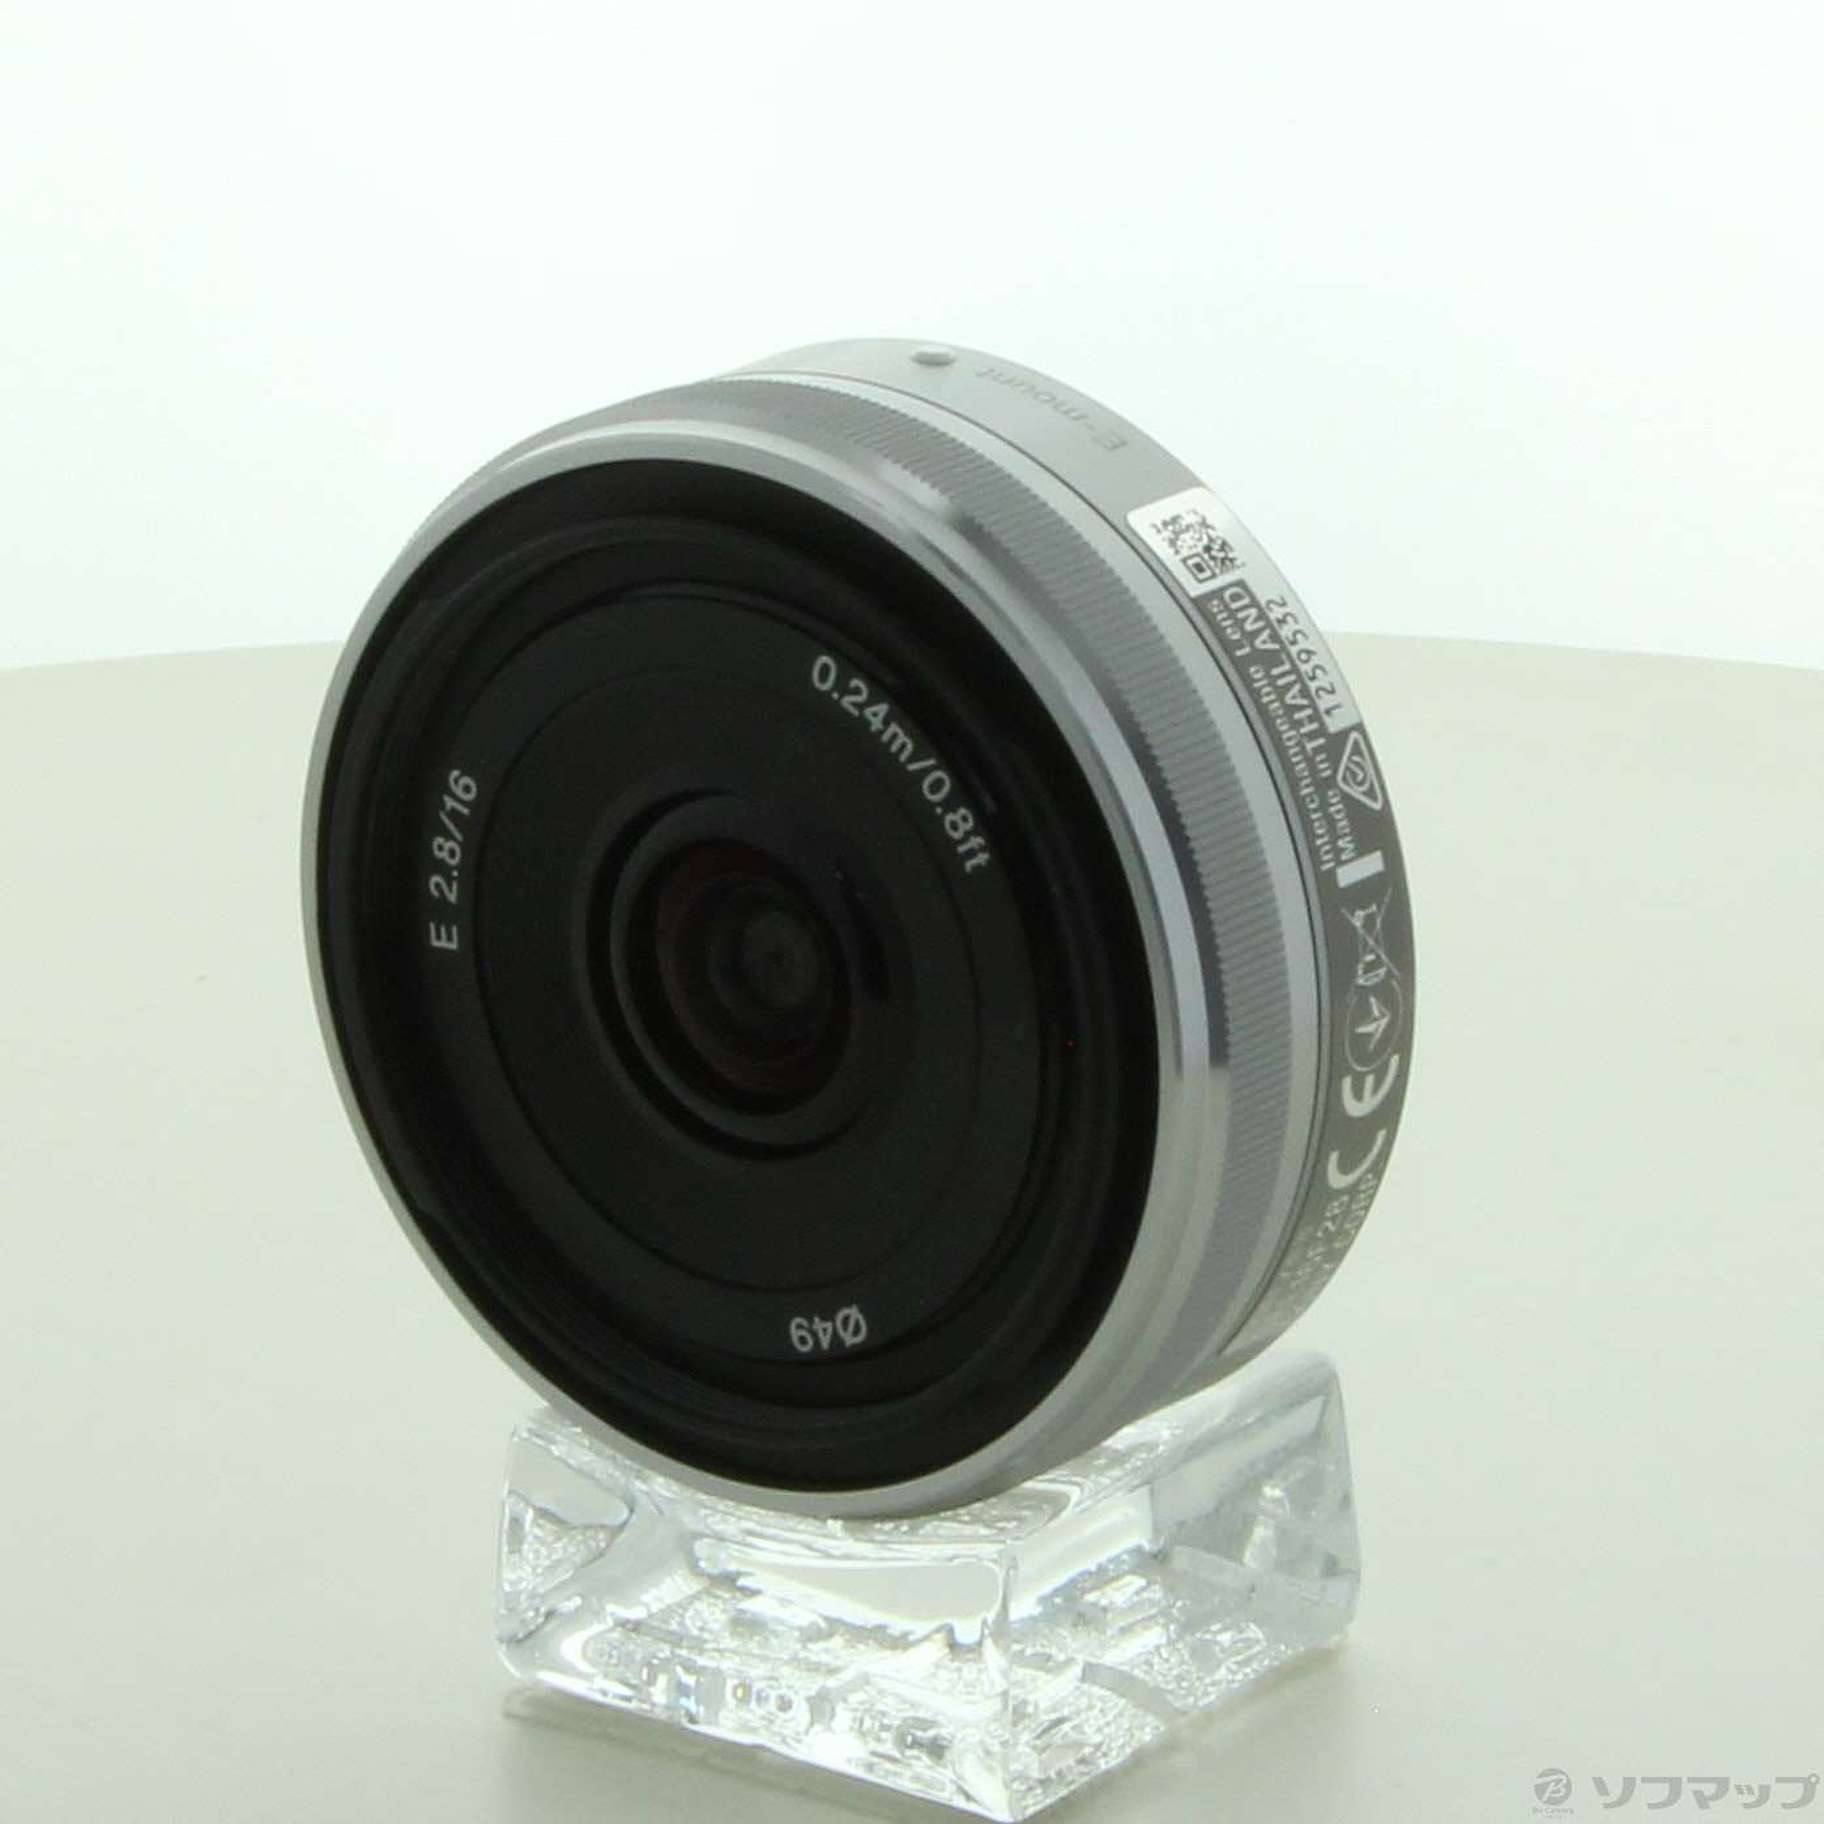 中古超美品 Sony ソニー 16mm 2.8 SEL16F28 単焦点レンズ - rehda.com